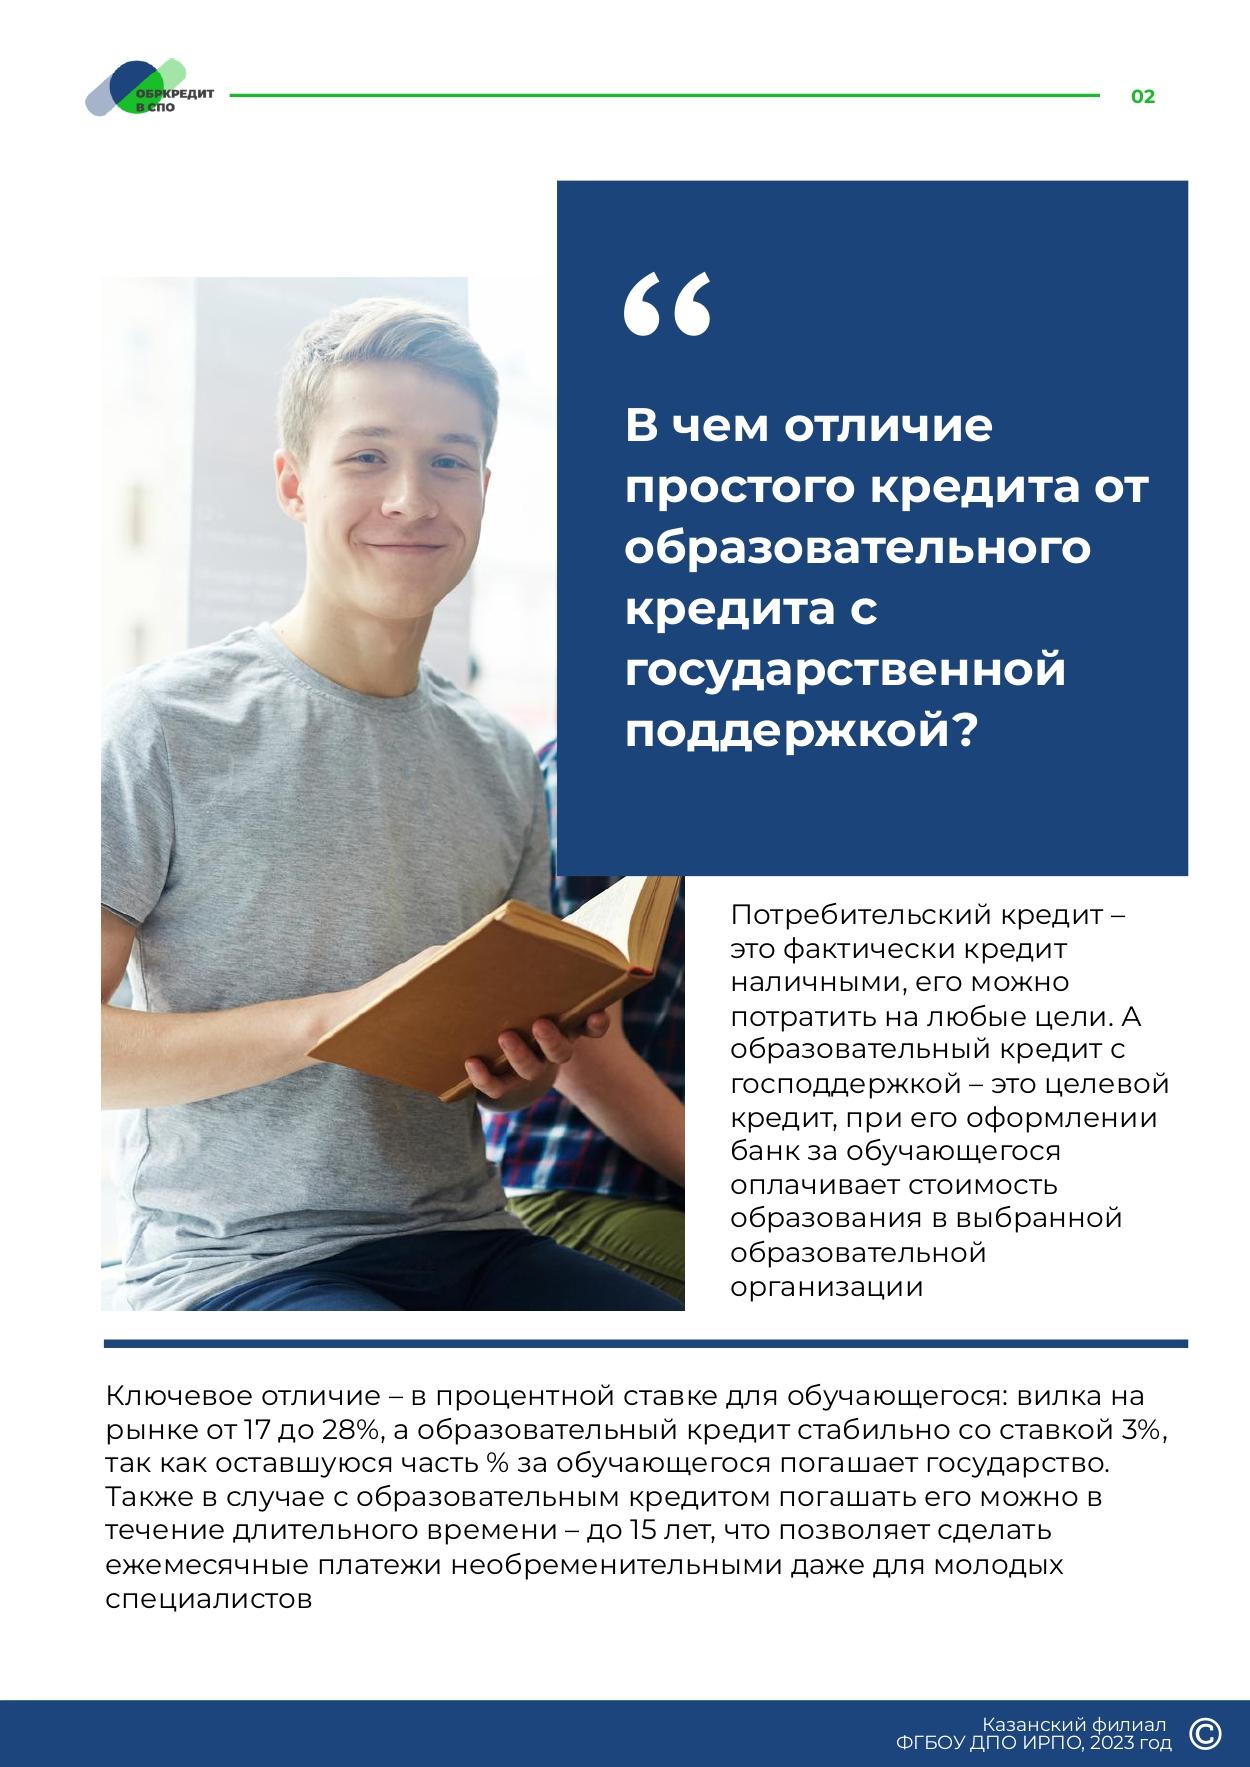 Obrazovatelnoe_kreditovanie_posobie_dlya_studentov_SPO_page-0002